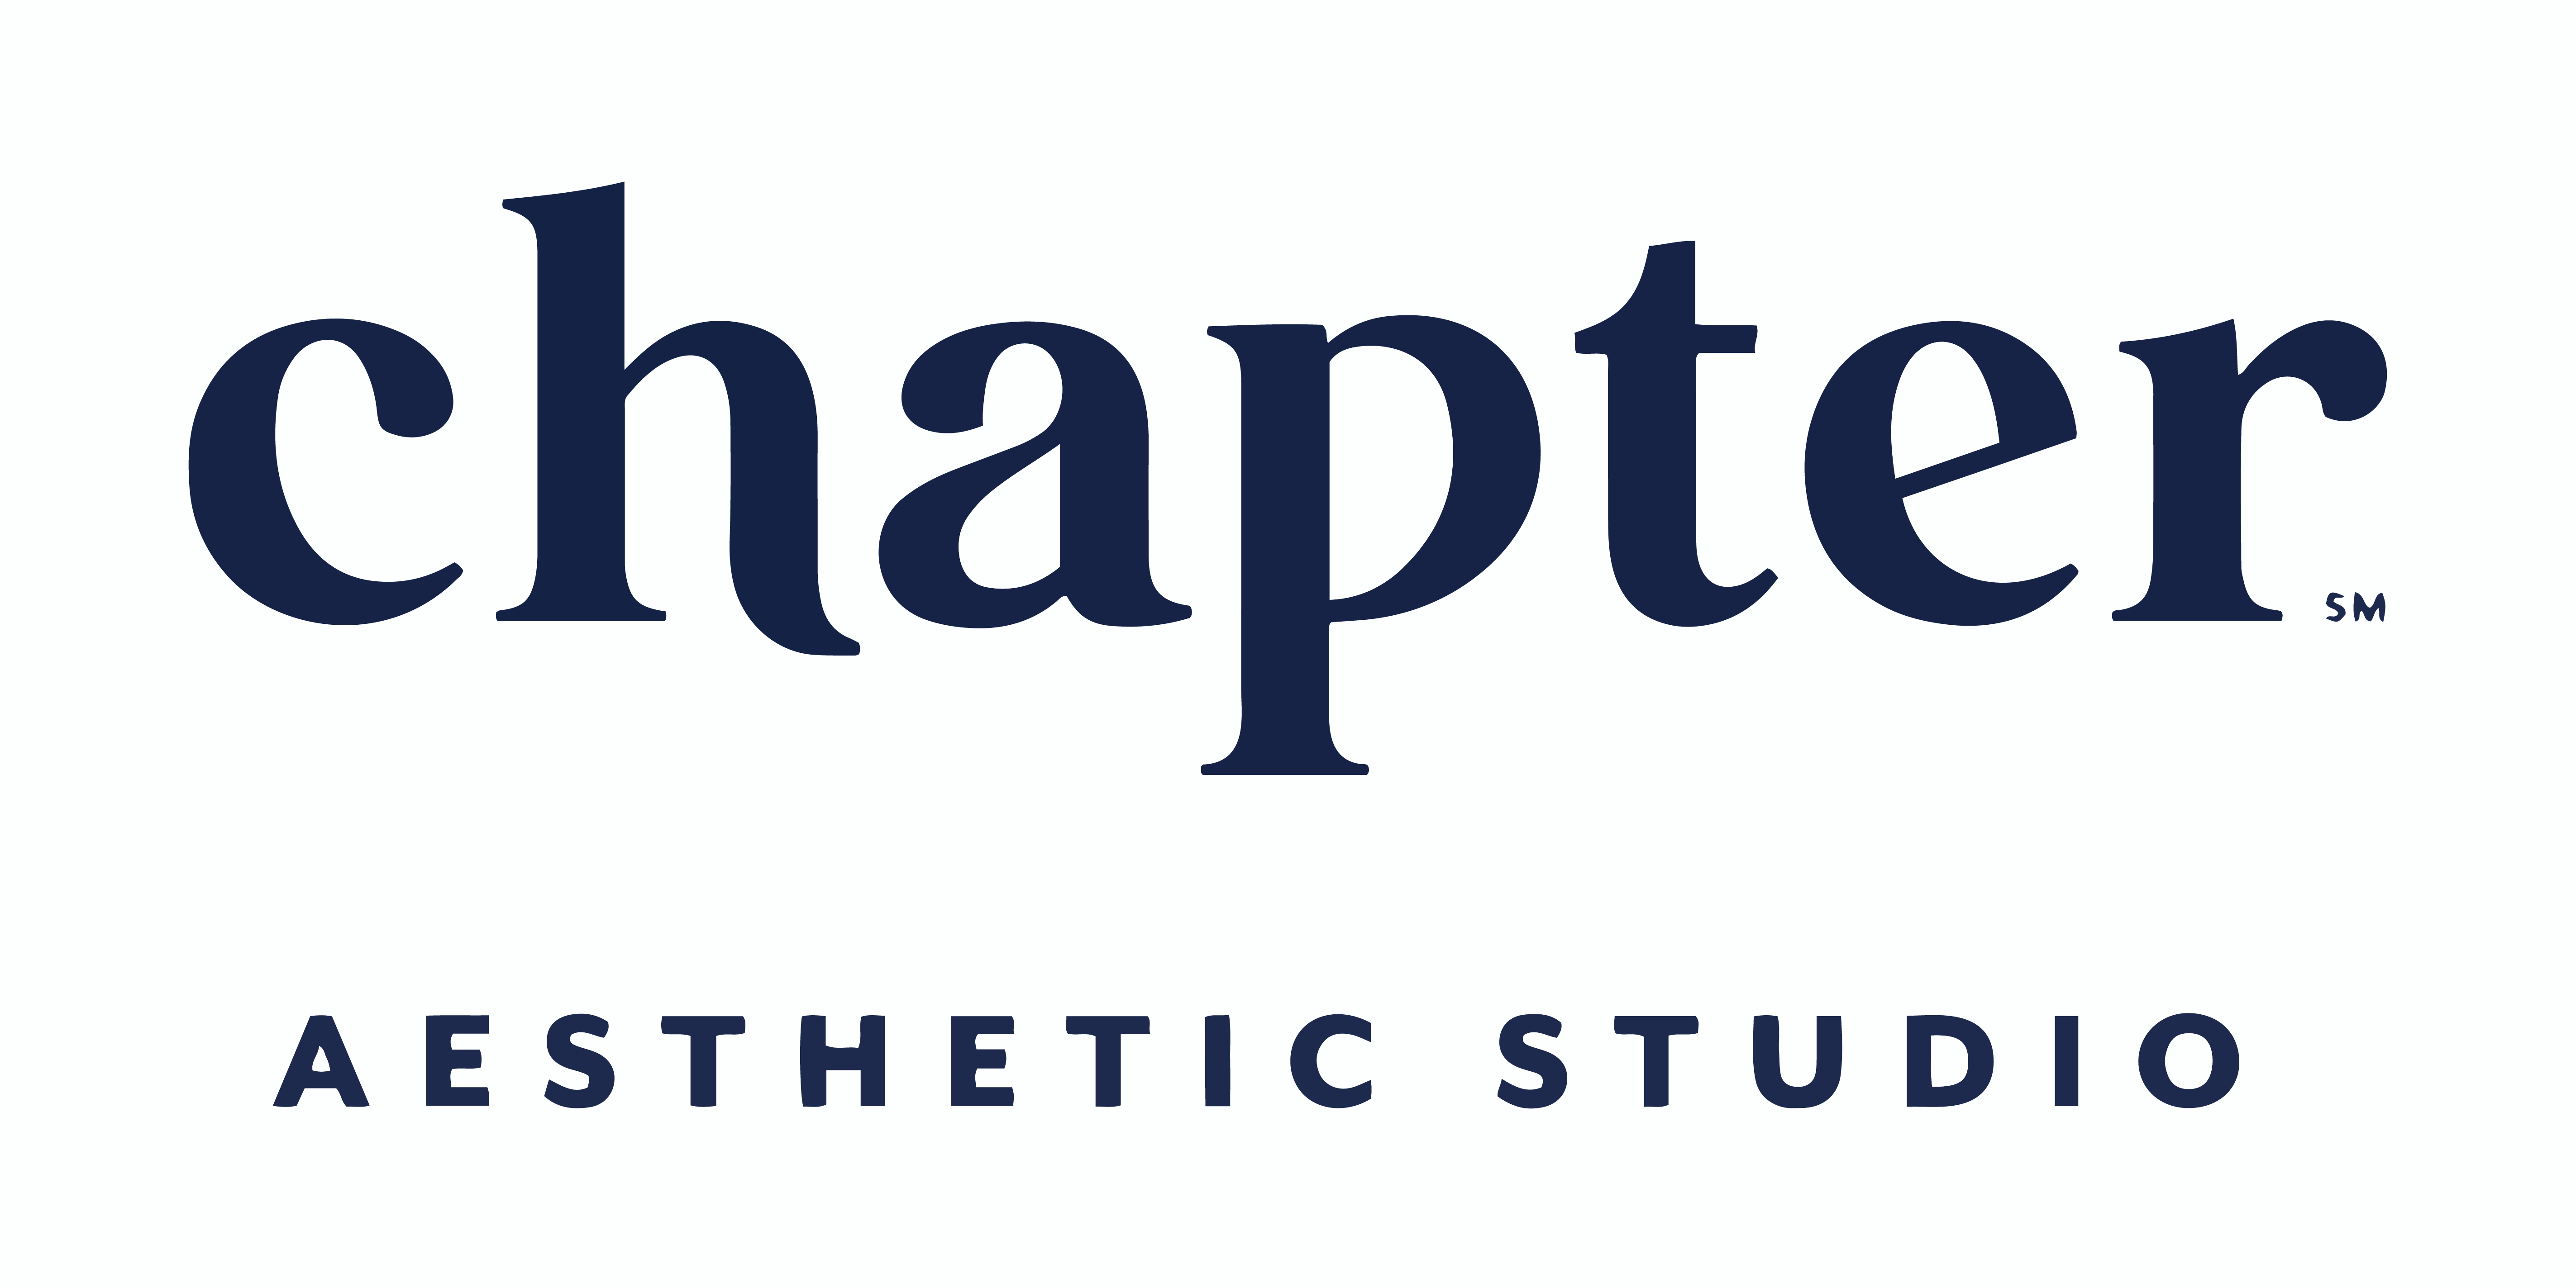 Chapter Aesthetic Studio